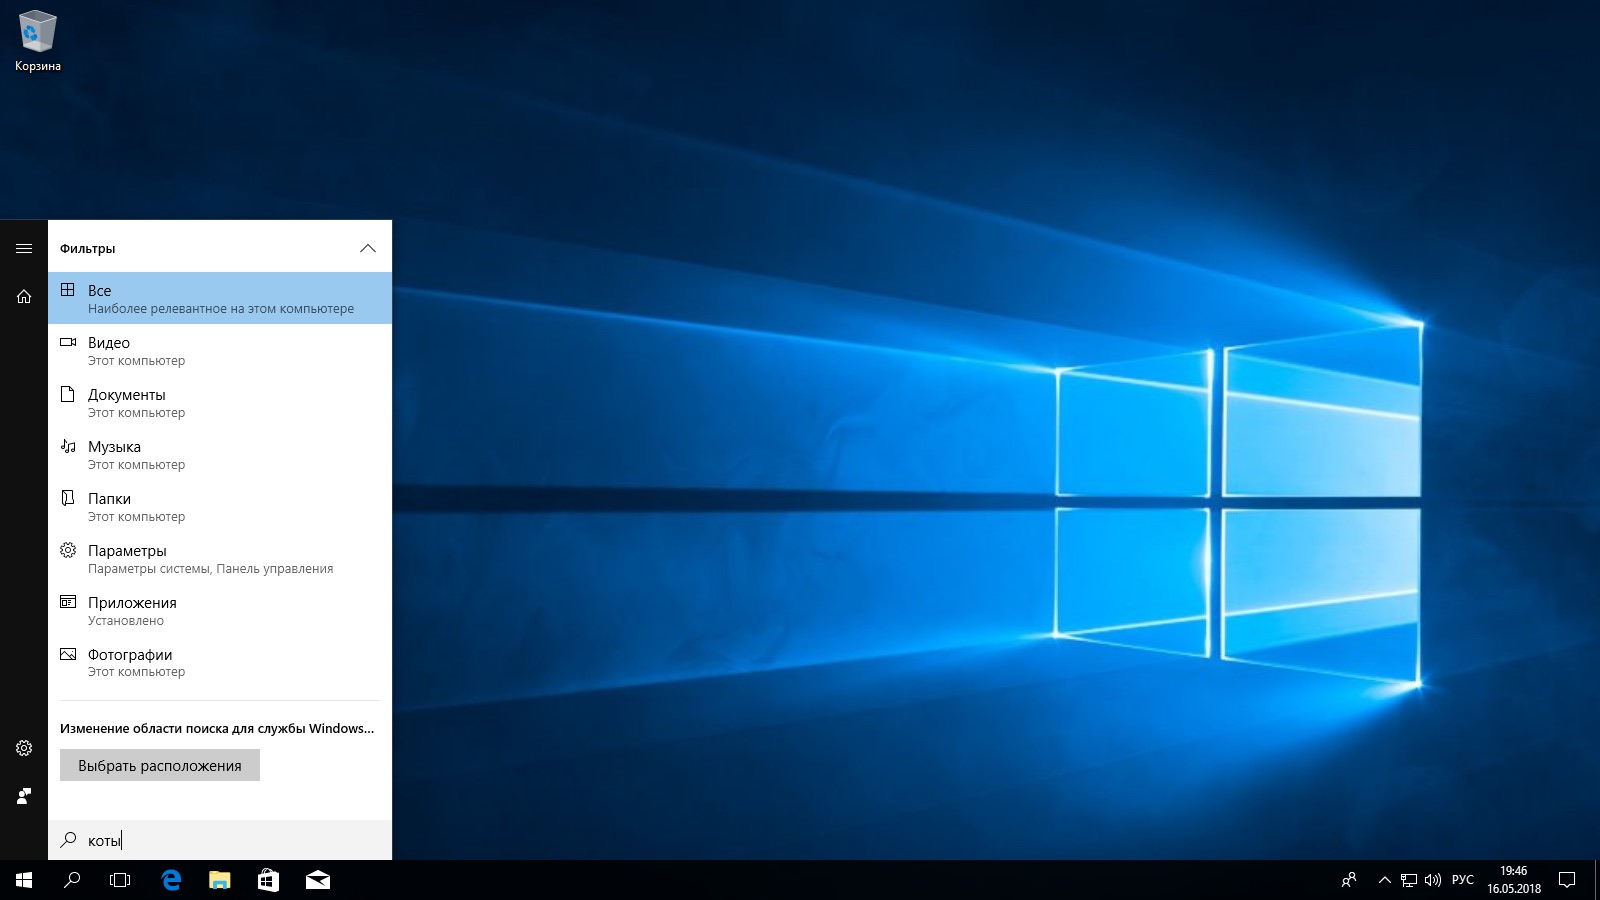 Как выжать максимум из поиска в Windows 10 - Лайфхакер